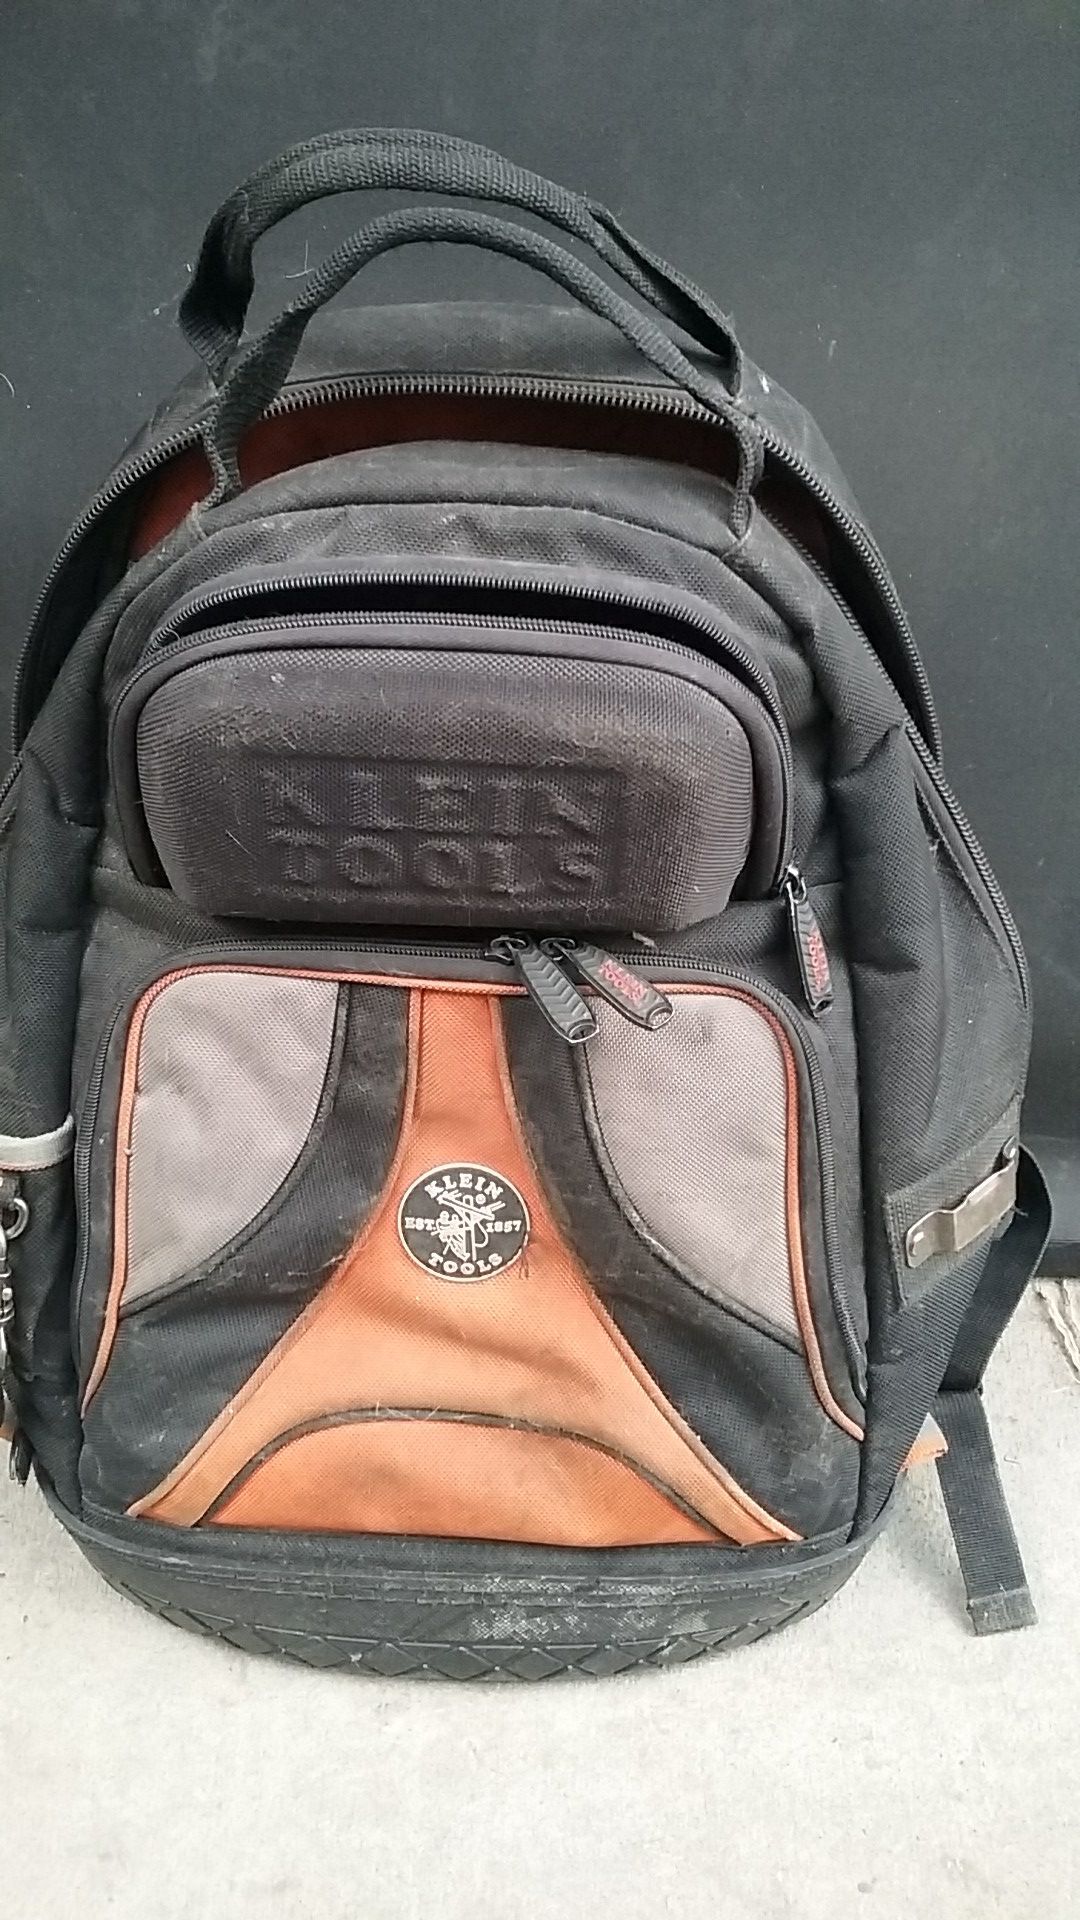 Klein tools backpack tool bag